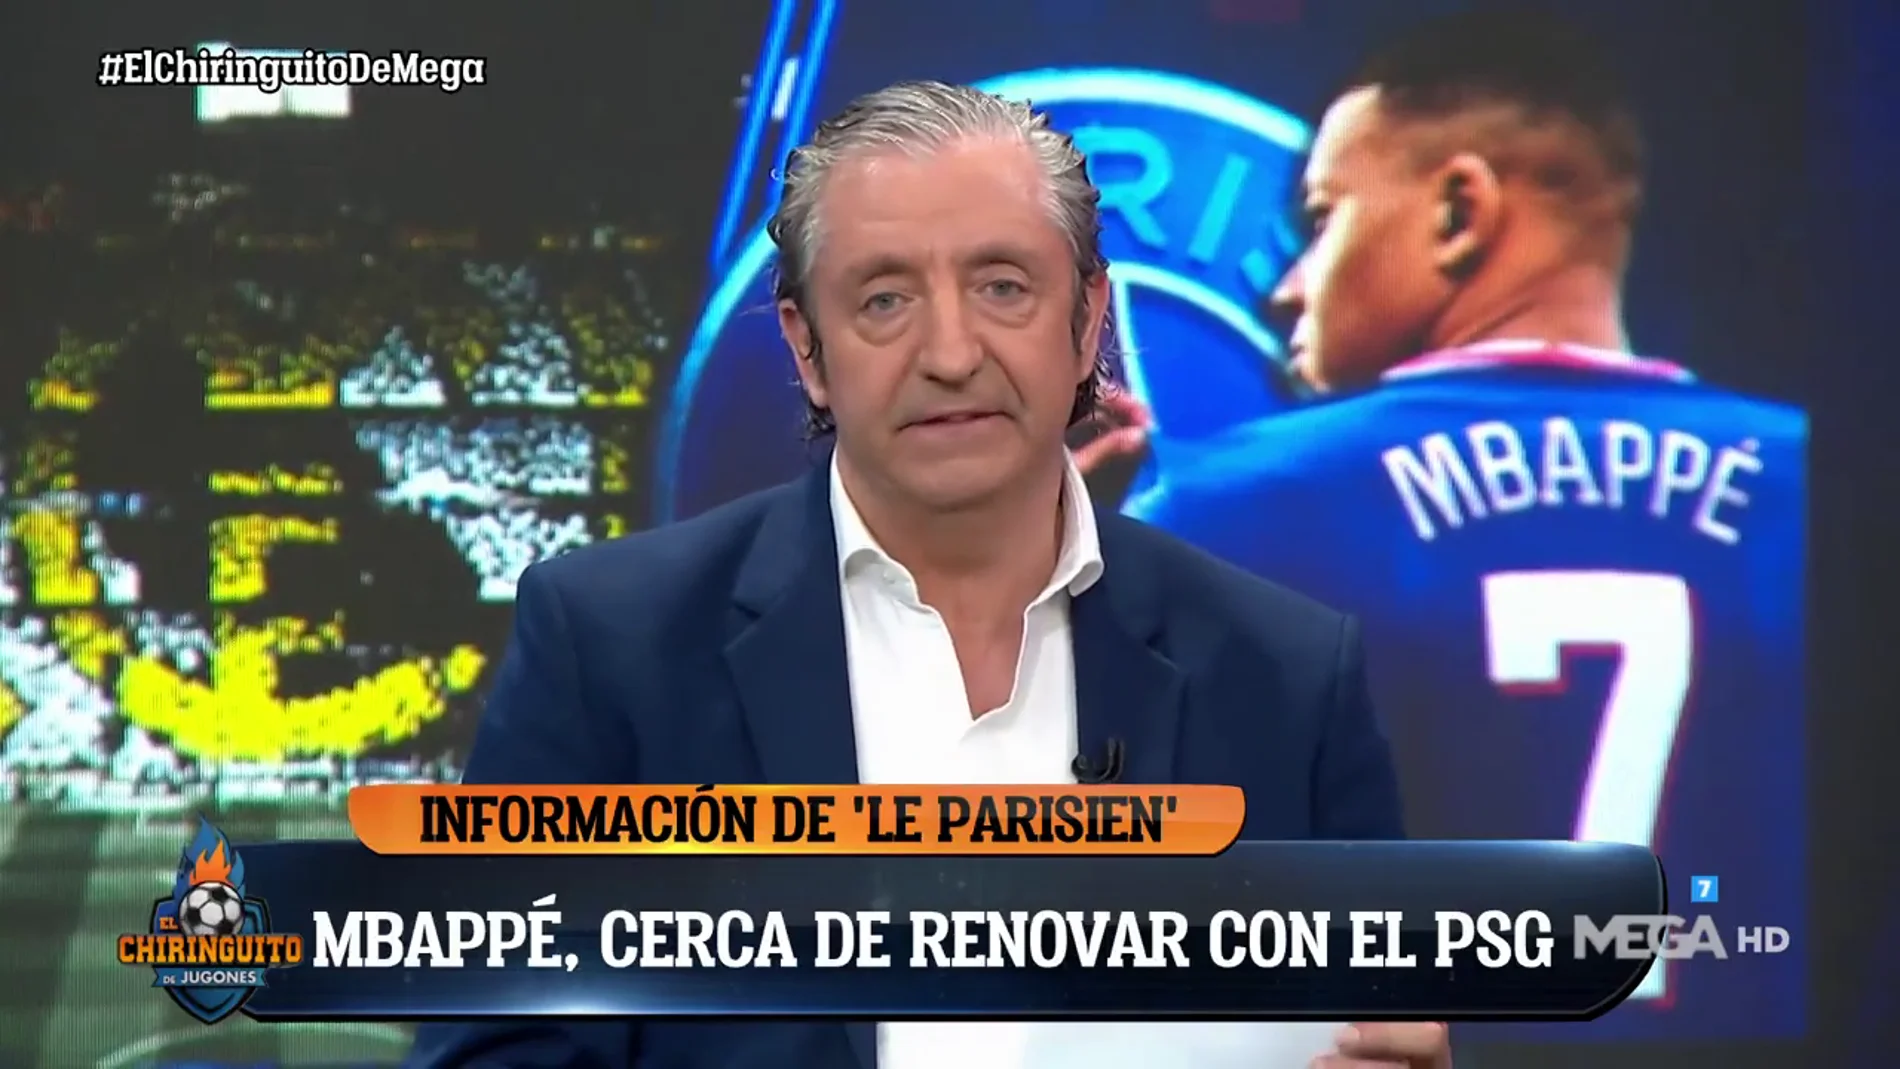 Josep Pedrerol: "¿Mbappé? Hasta que acabe la liga habrá tensión"